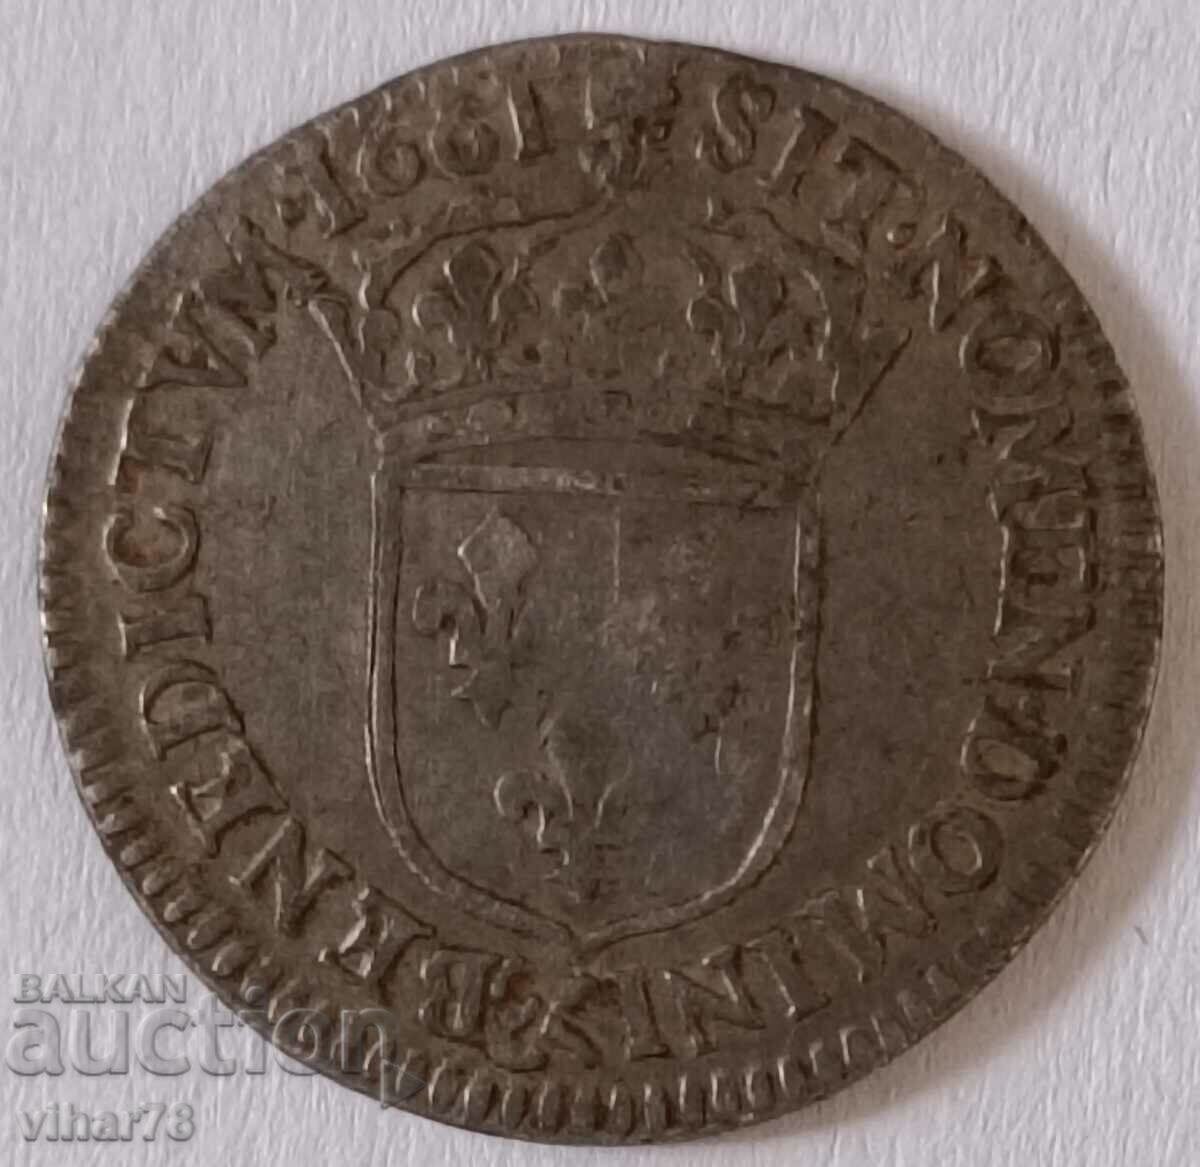 Rare Silver Coin